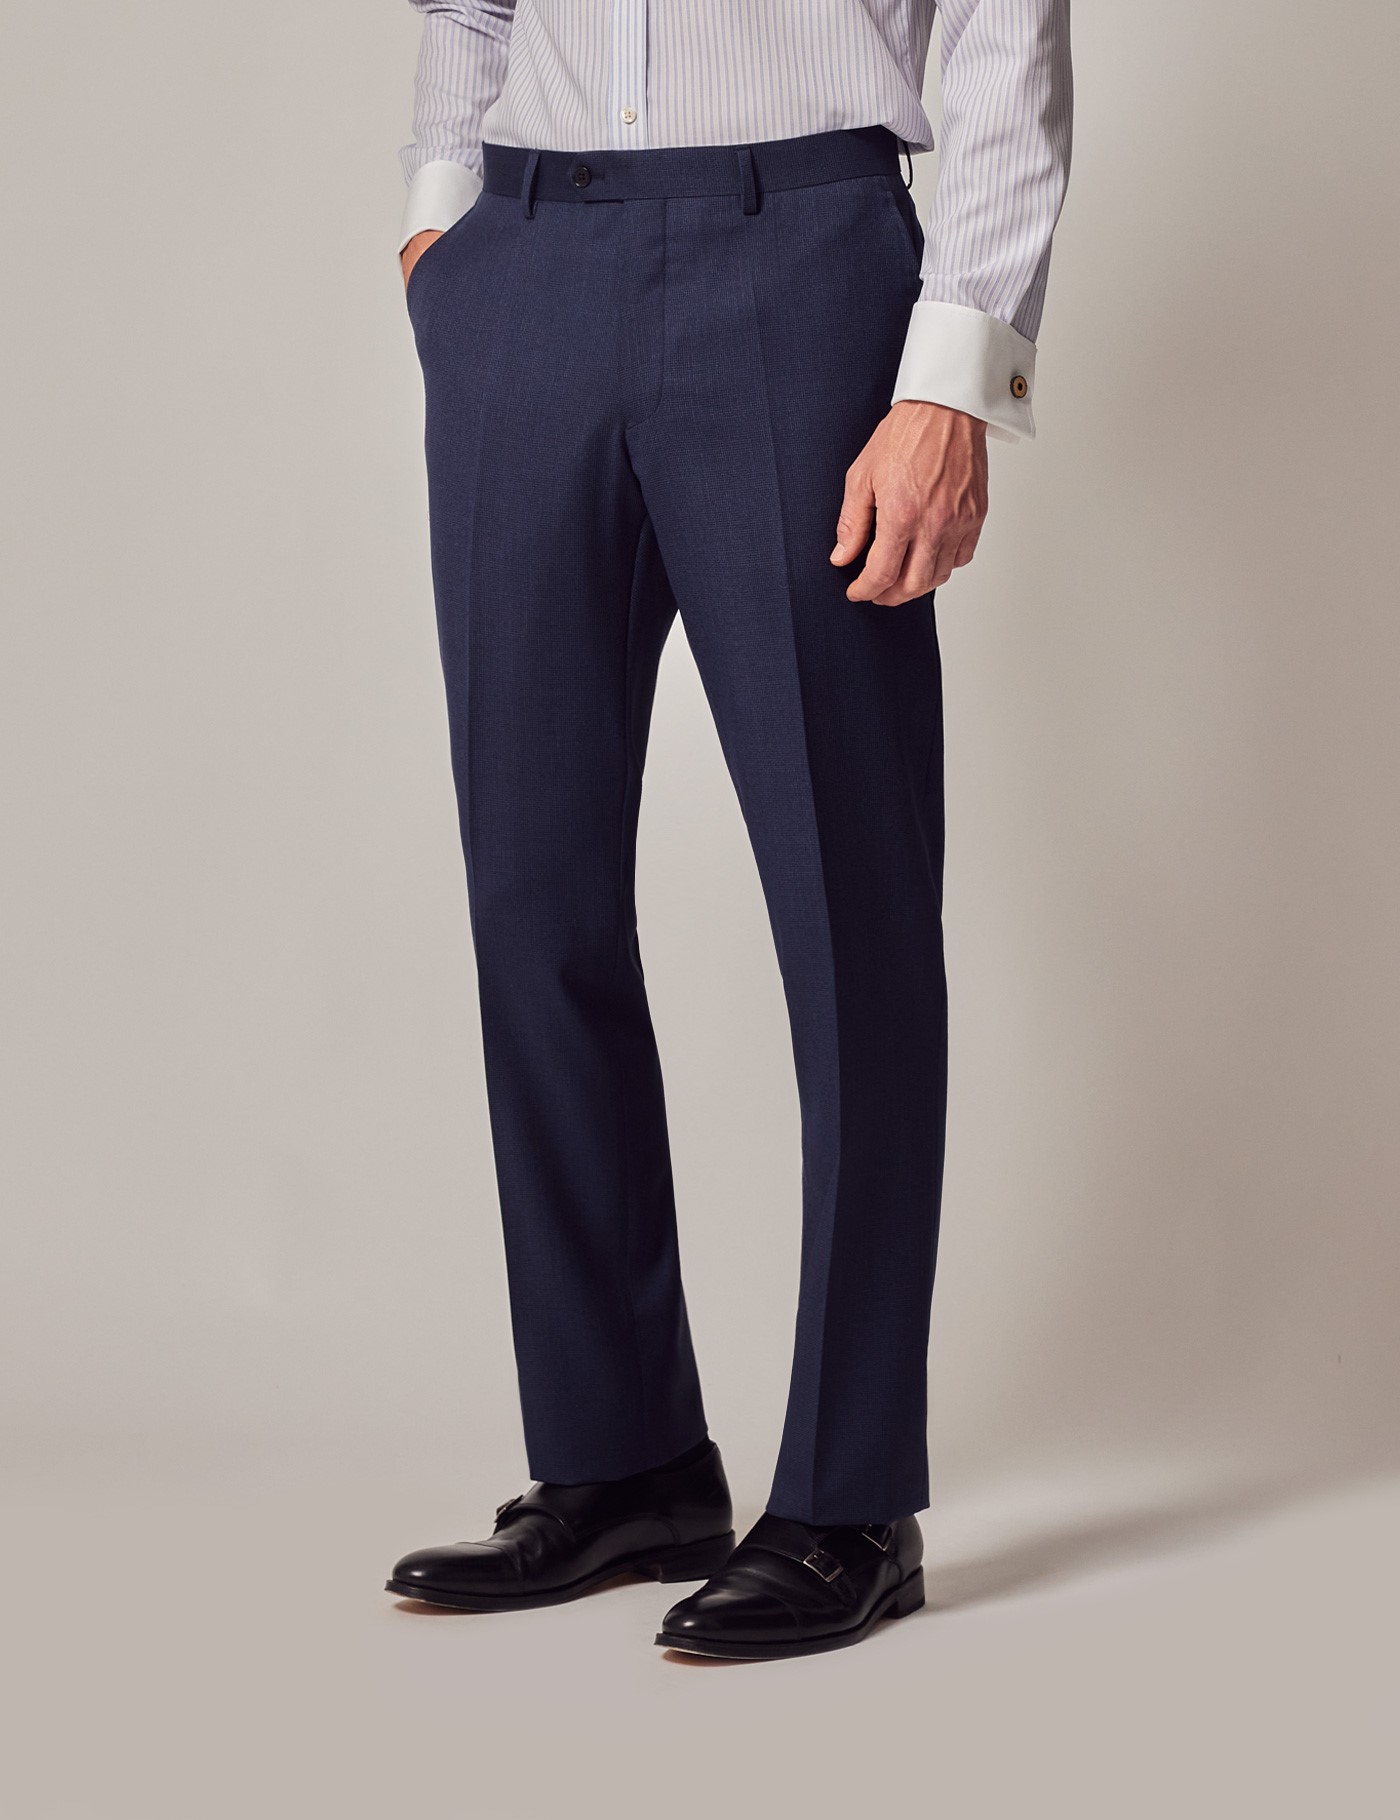 Buy Plaid&Plain Men's Stretch Dress Pants Slim Fit Skinny Suit Pants, Black  (Blue Stripes), 27W x 28L at Amazon.in